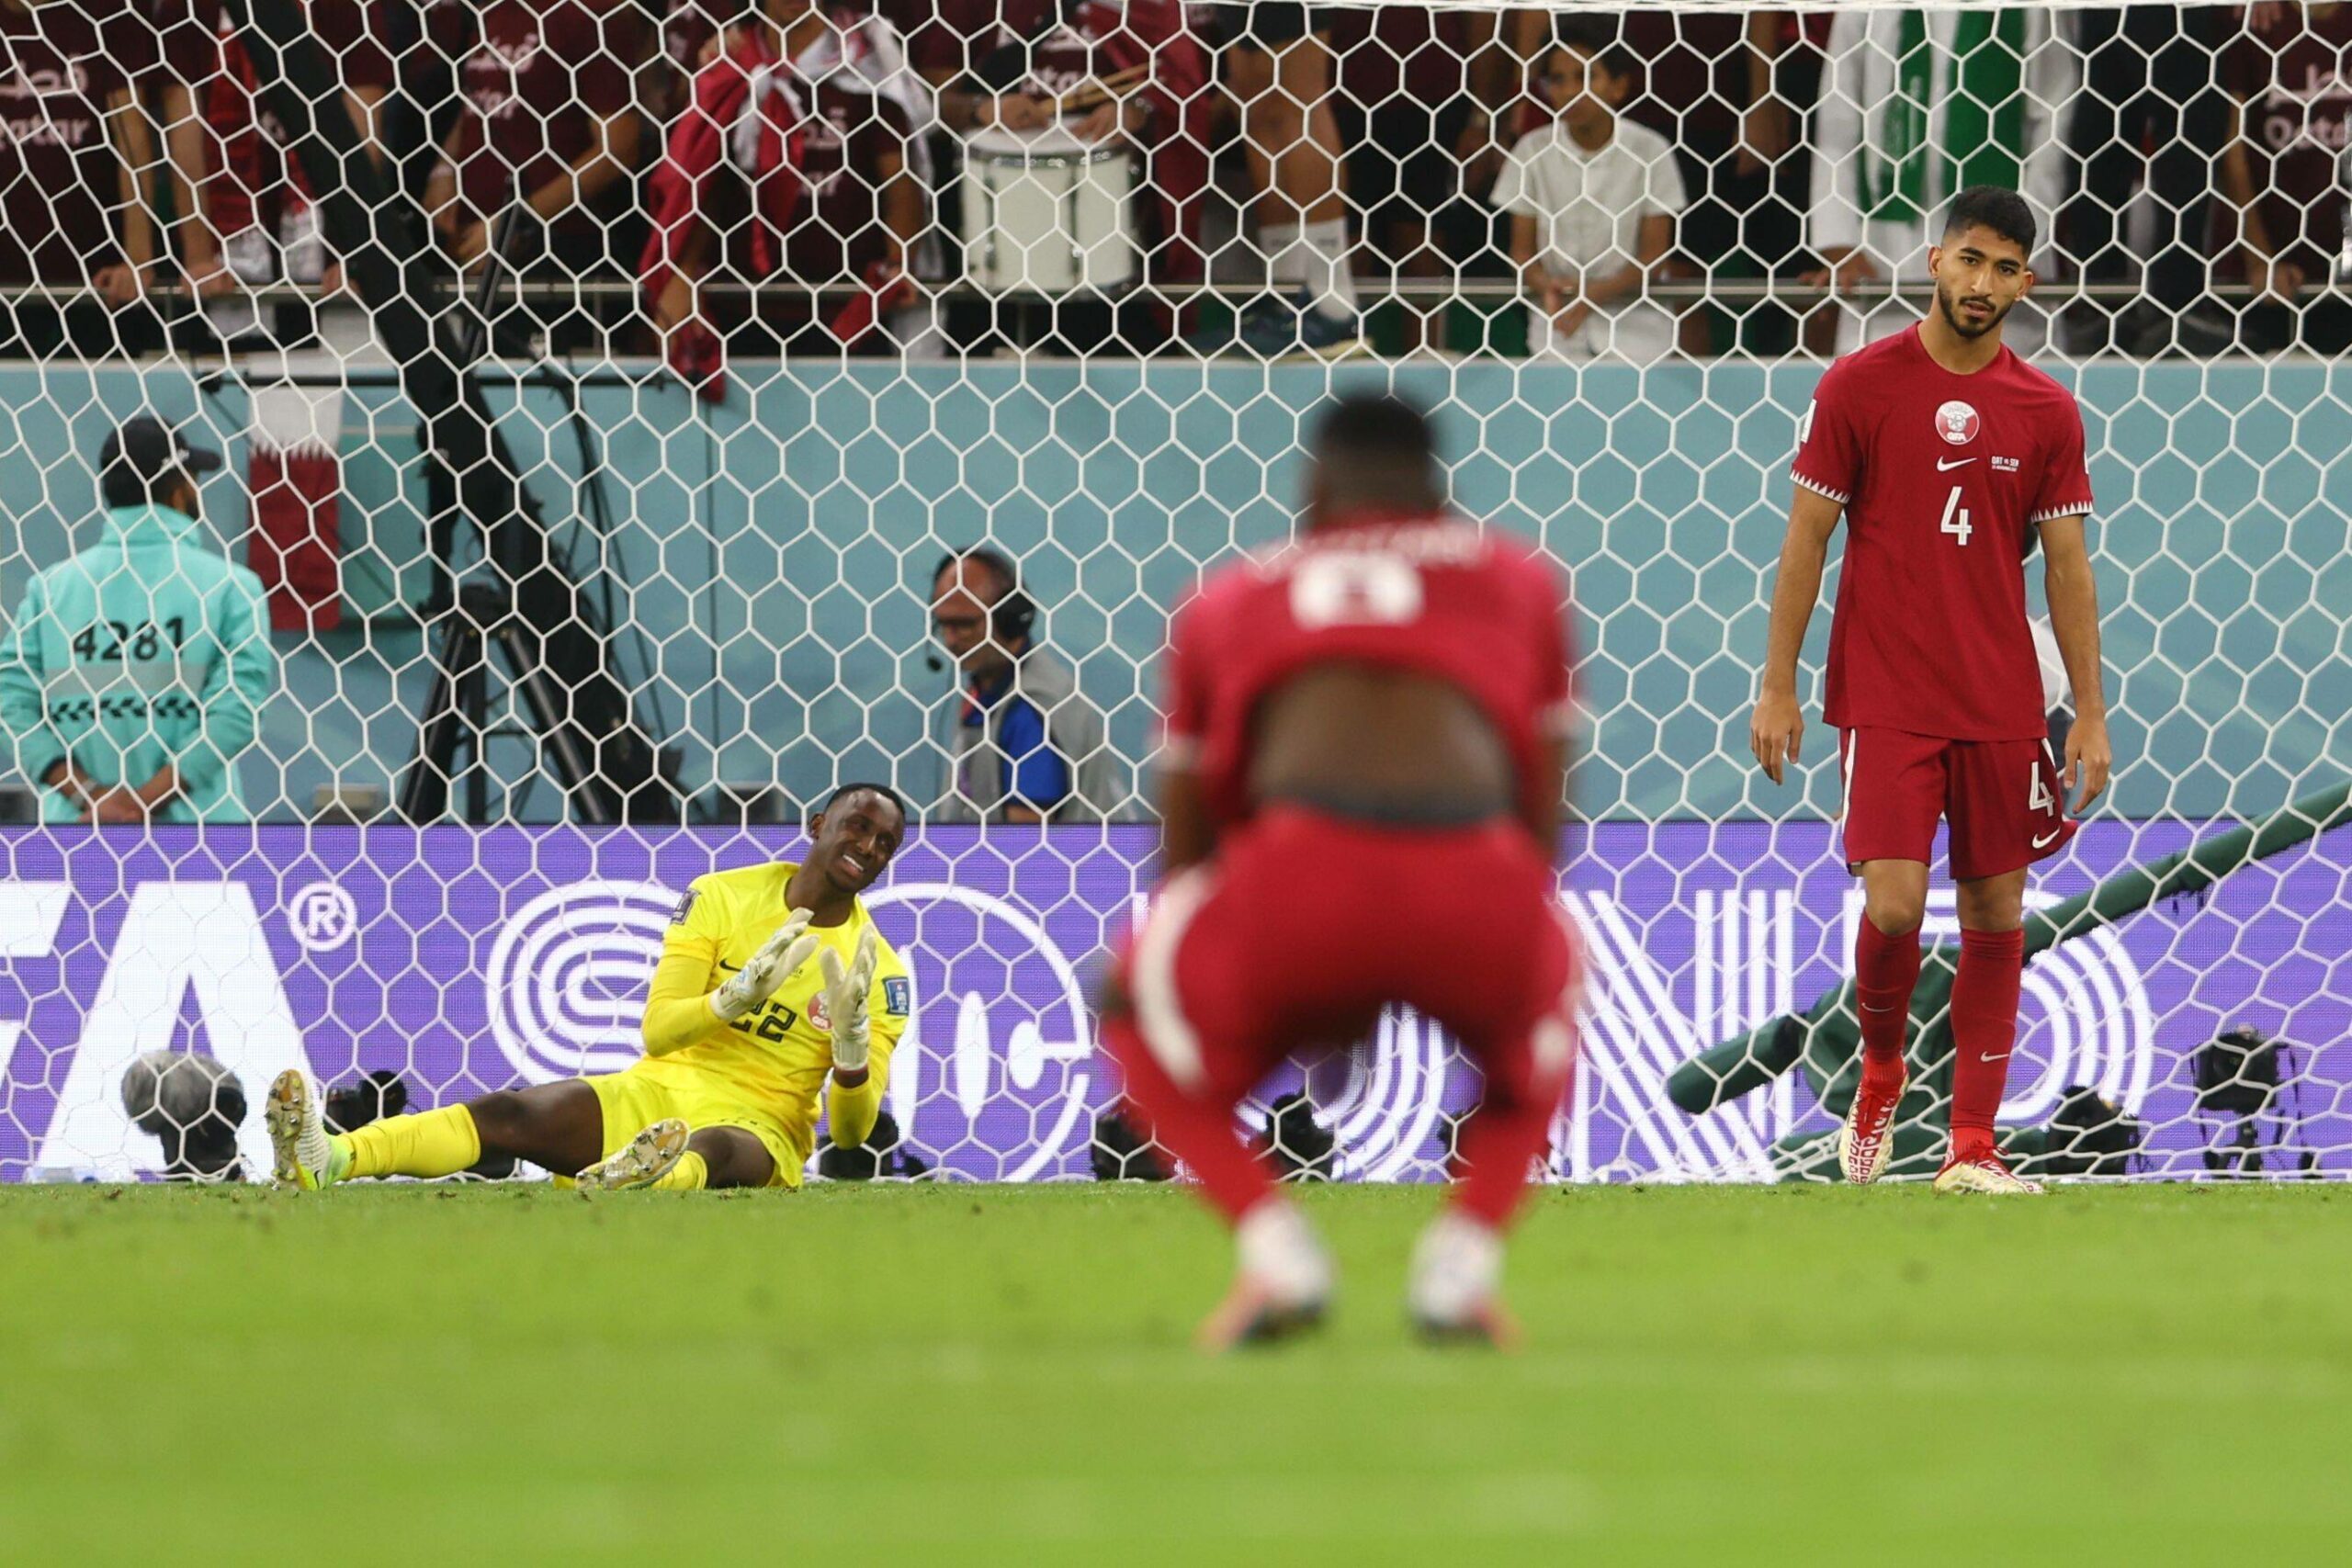 Enttäuschte Gesichter bei Katars Nationalspielern nach der zweiten WM-Pleite. Katar